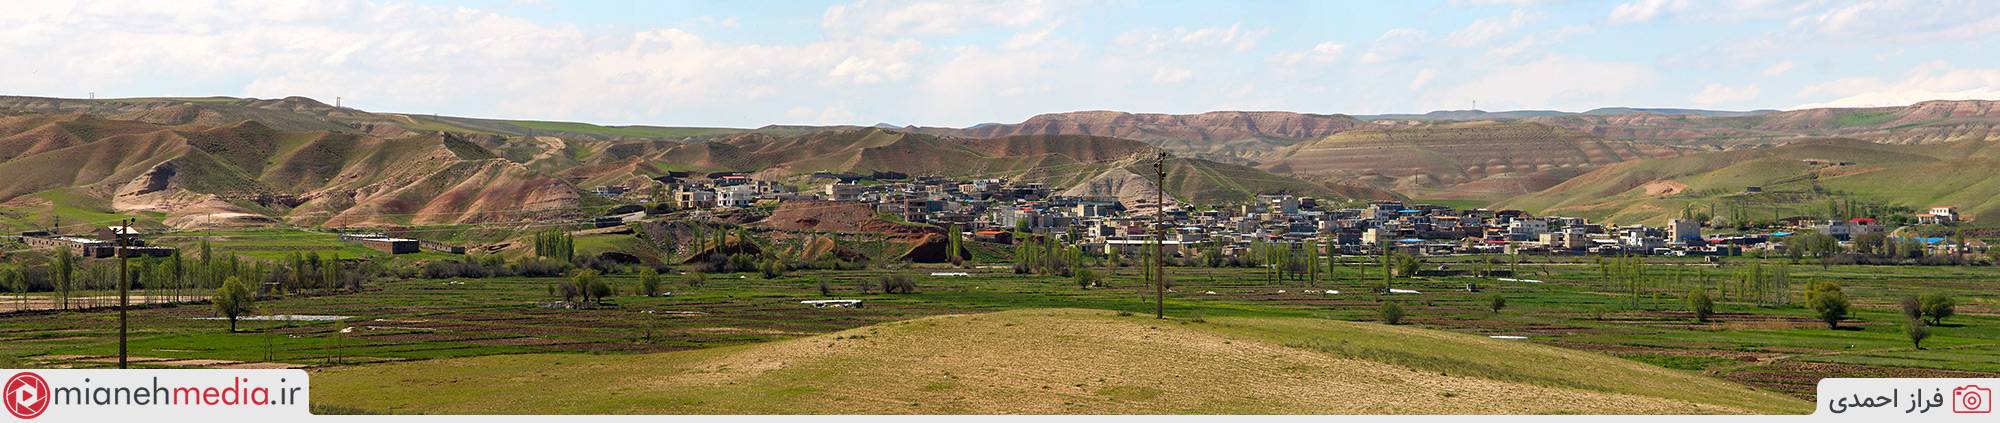 روستای گوندوغدی (گون دوغدو)